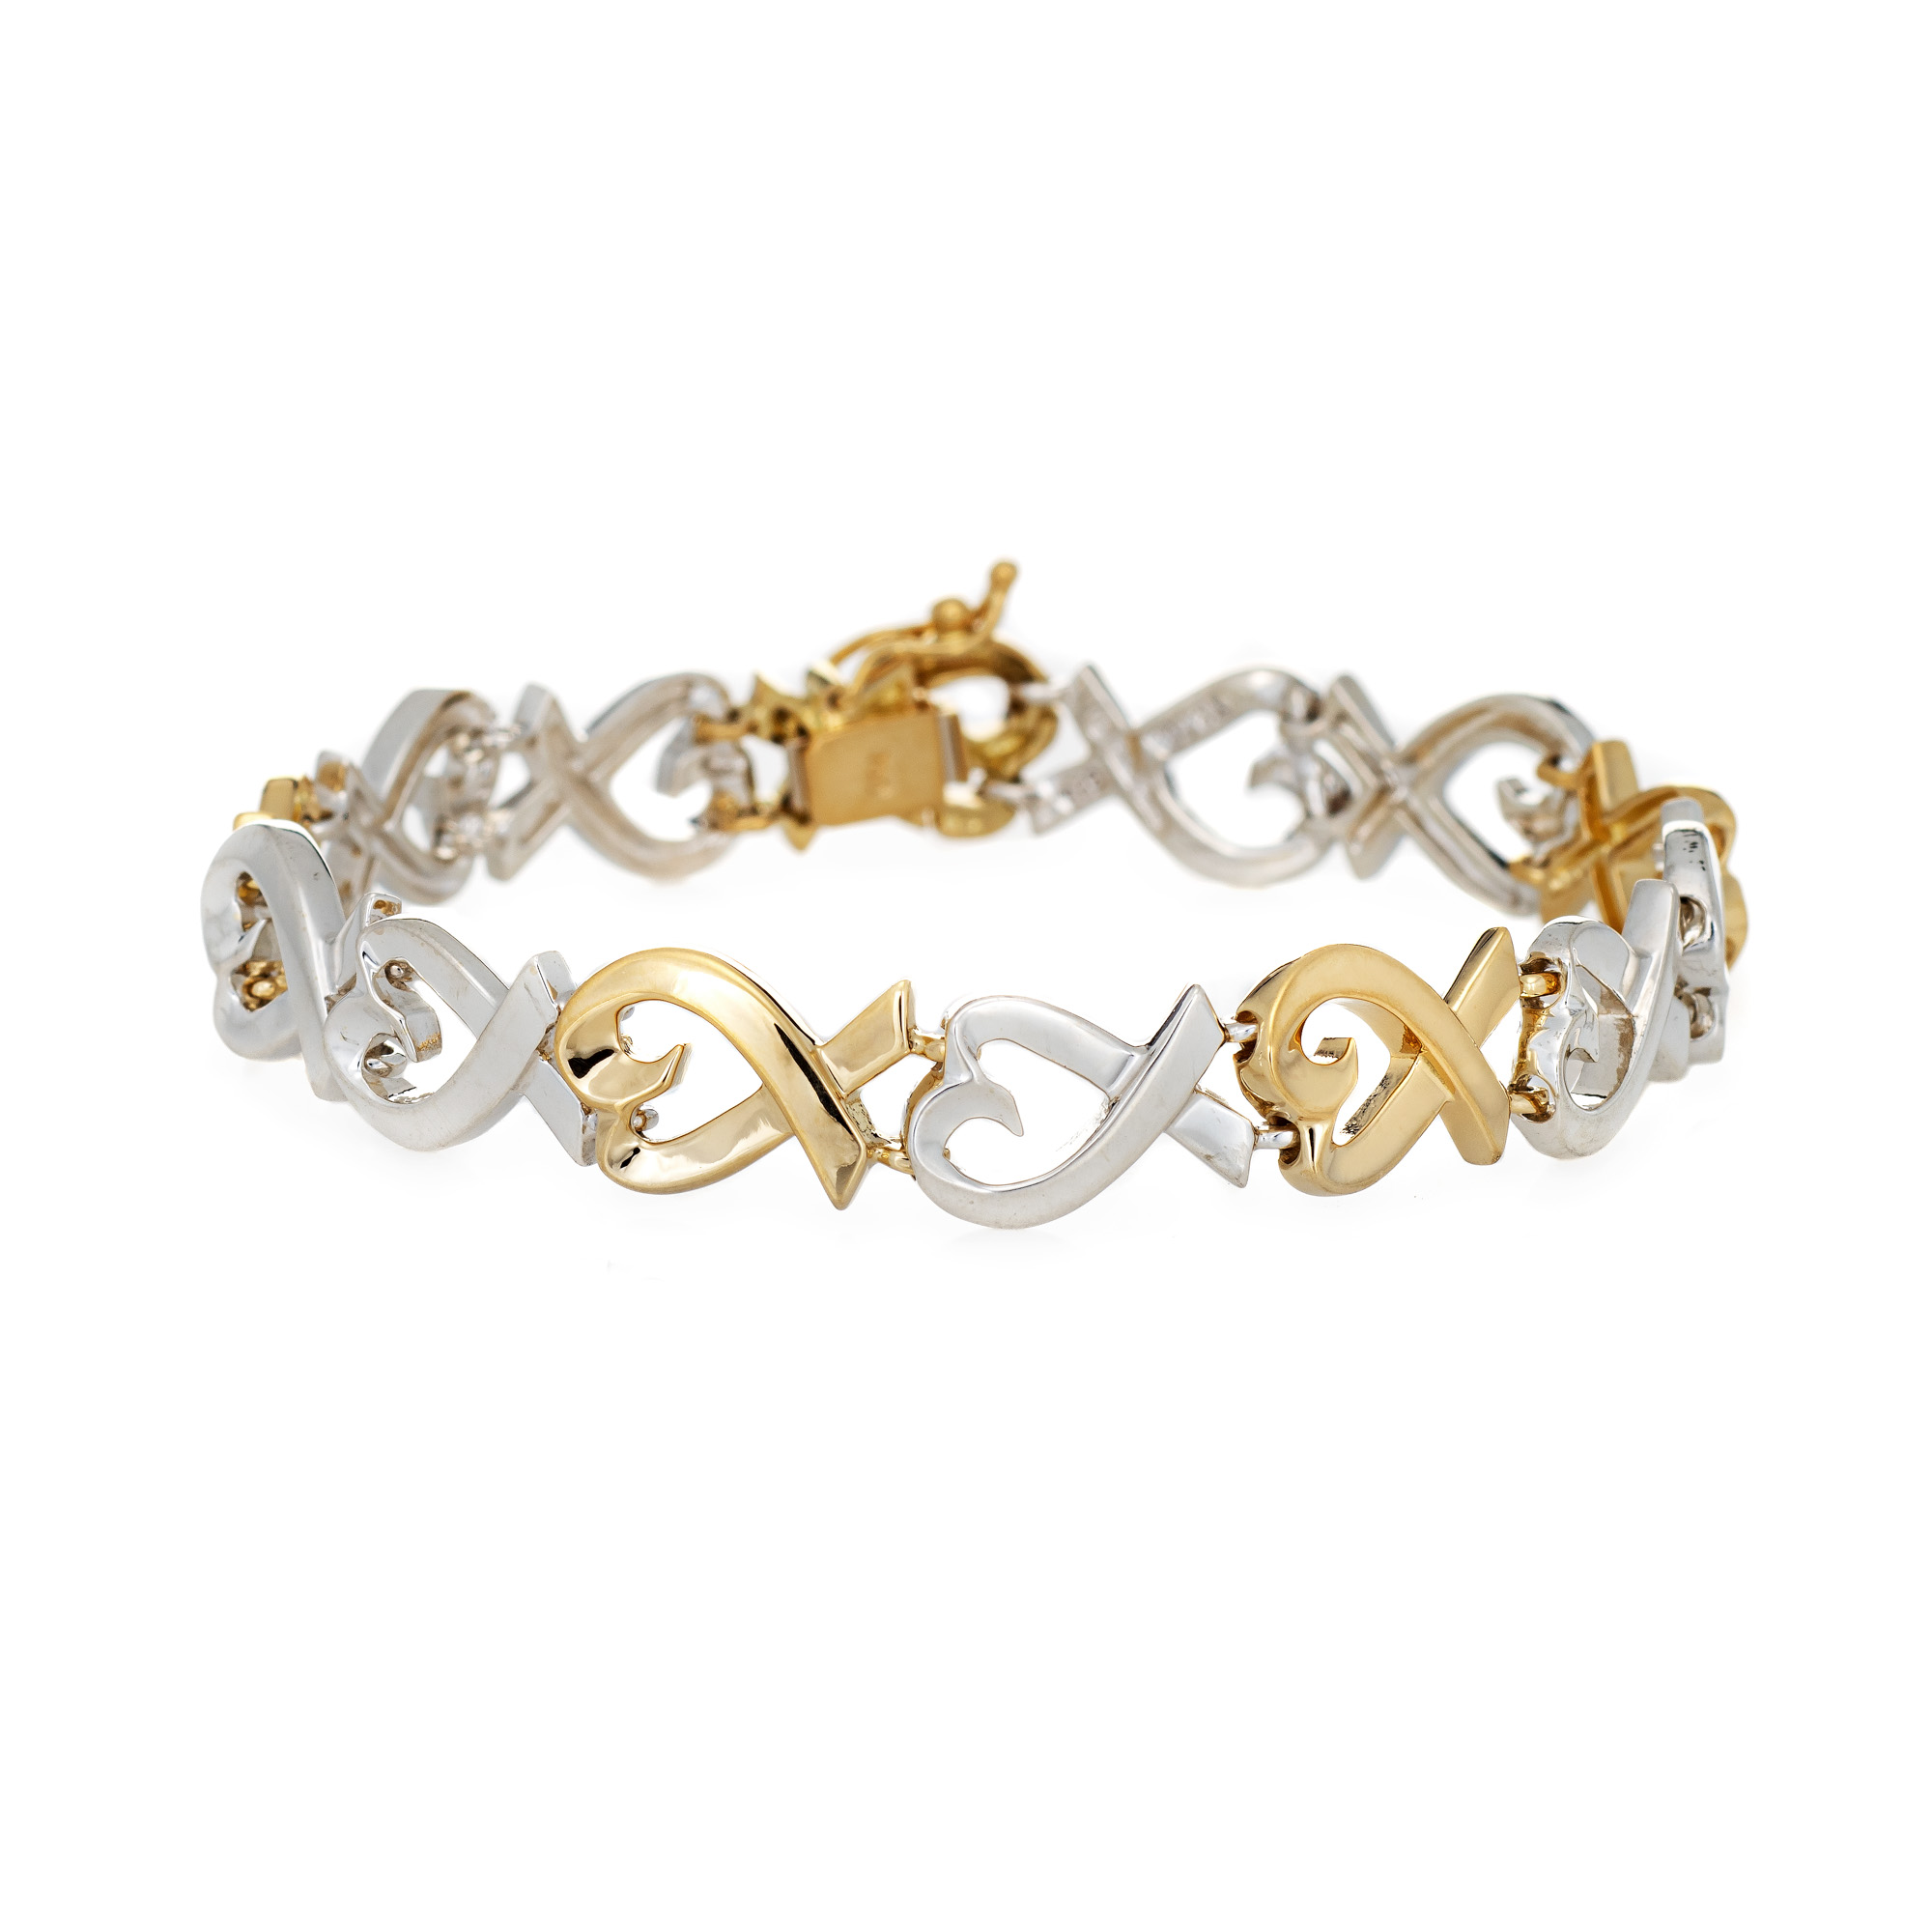 Tiffany & Co Loving Hearts Bracelet Paloma Picasso 18k Gold Silver Fine